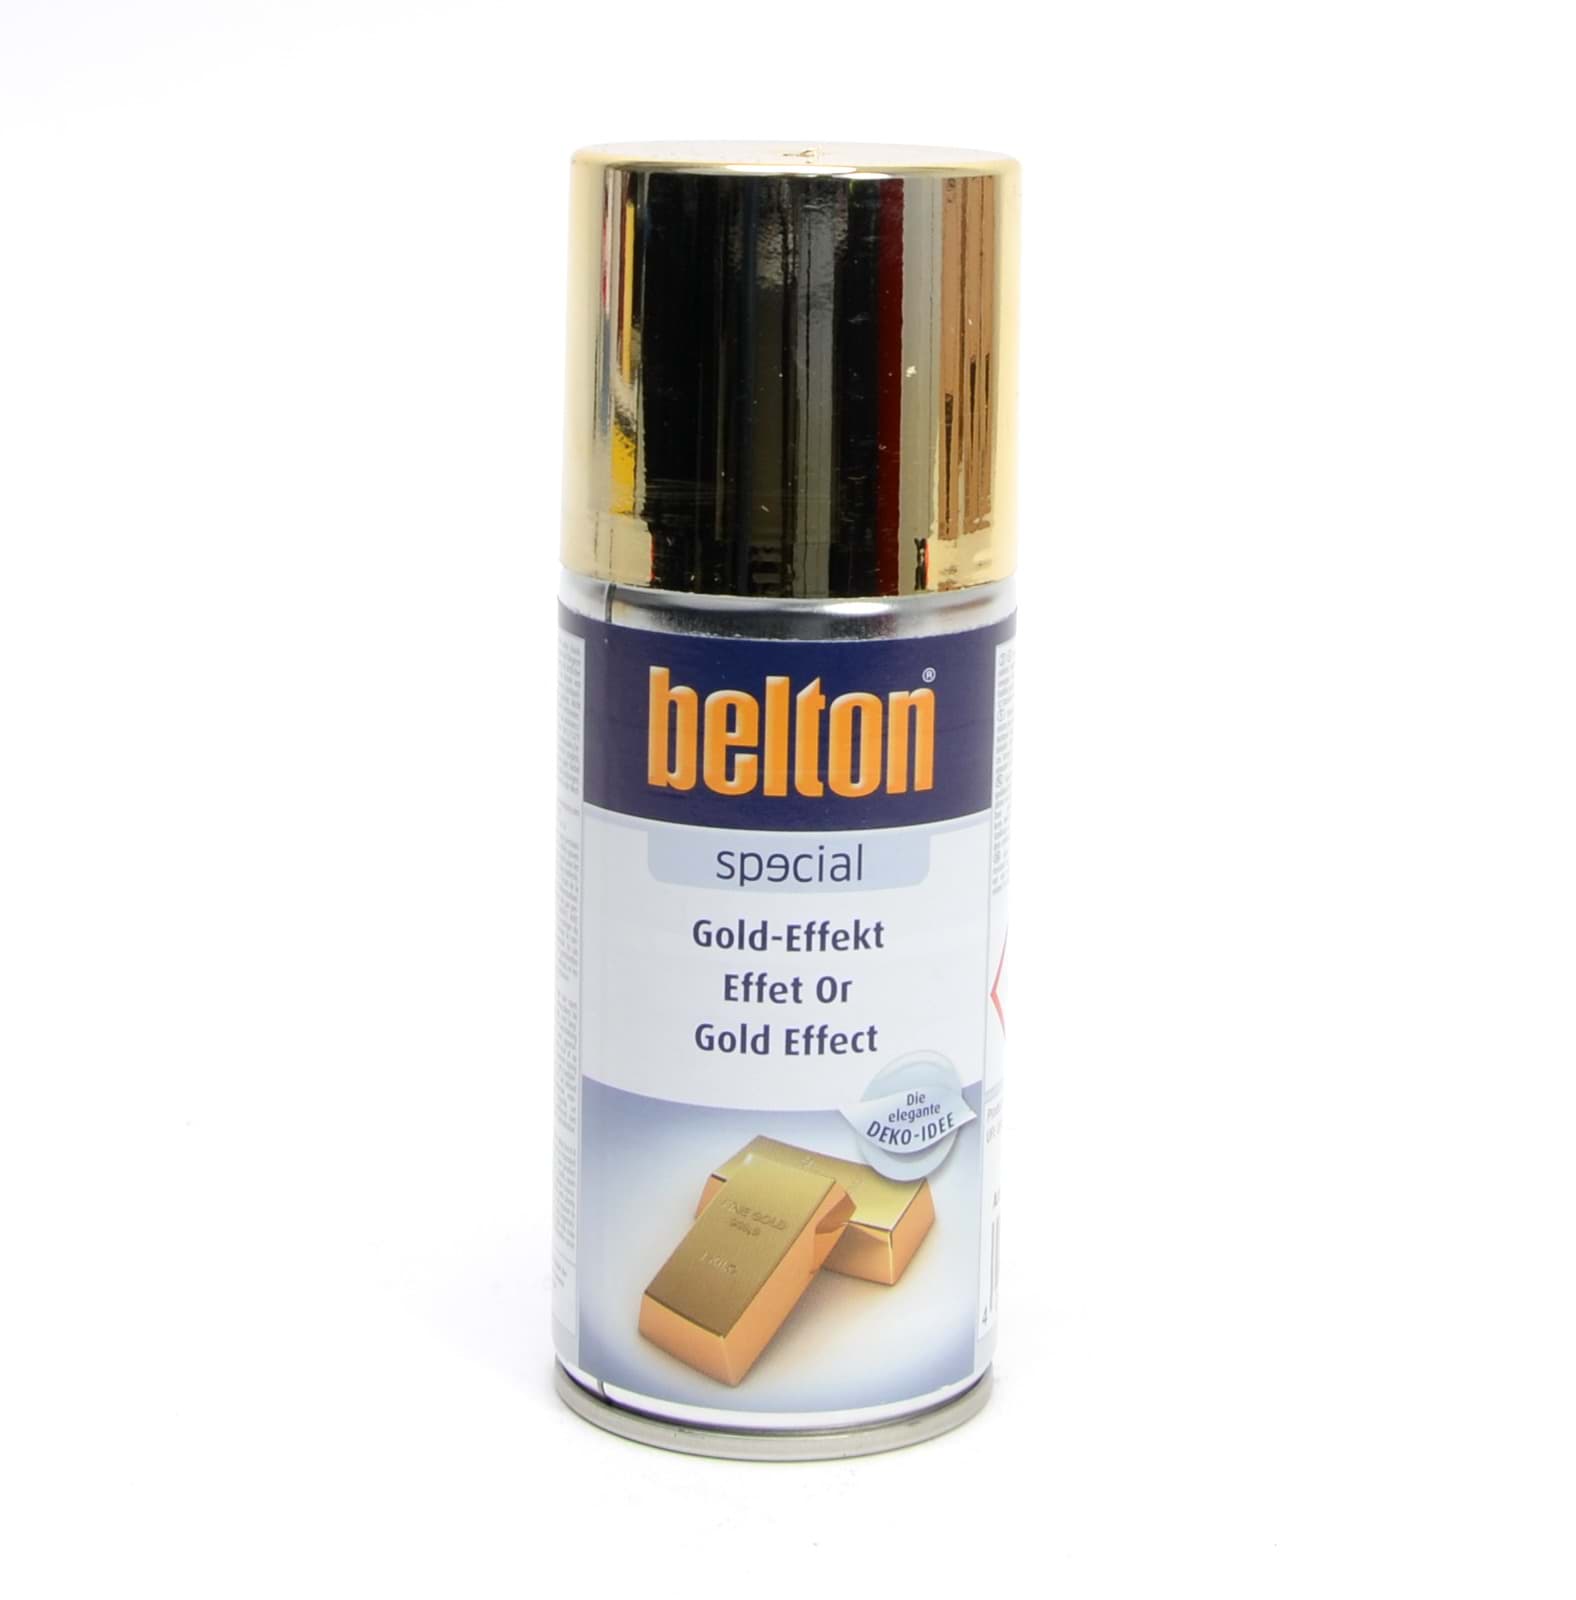 Изображение Belton SPECIAL GOLD-EFFEKT 150ml